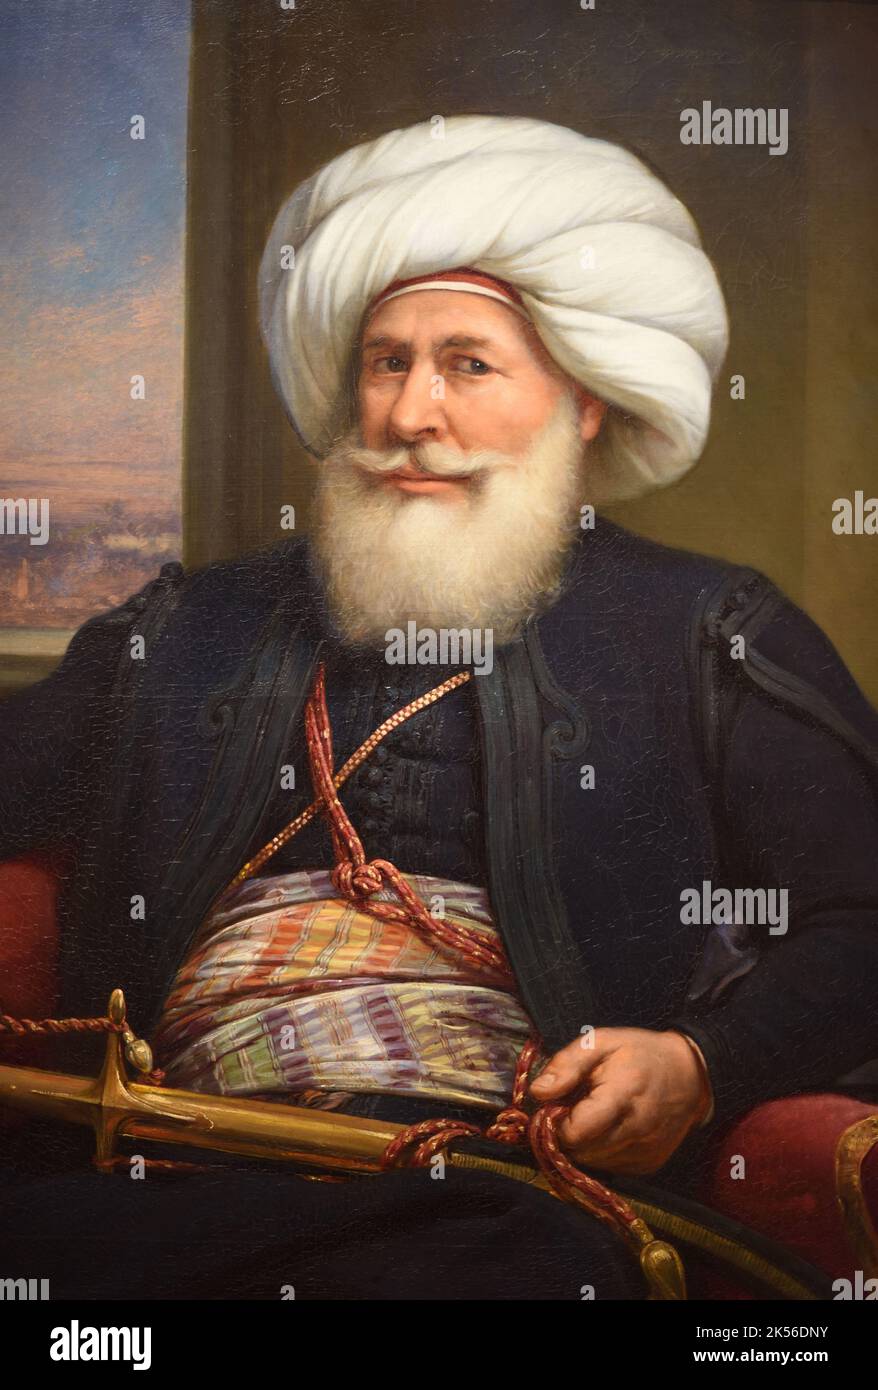 Portrait de Muhammed Ali Pasha, alias Muhammed Ali d'Égypte et du Soudan ou Mehmet Ali Pasha (1769-1849) était un gouverneur ottoman albanais et un dirigeant de facto de l'Égypte entre 1805 et 1848. Peinture à l'huile (1841) par Louis Charles Auguste Couder (détail) Banque D'Images